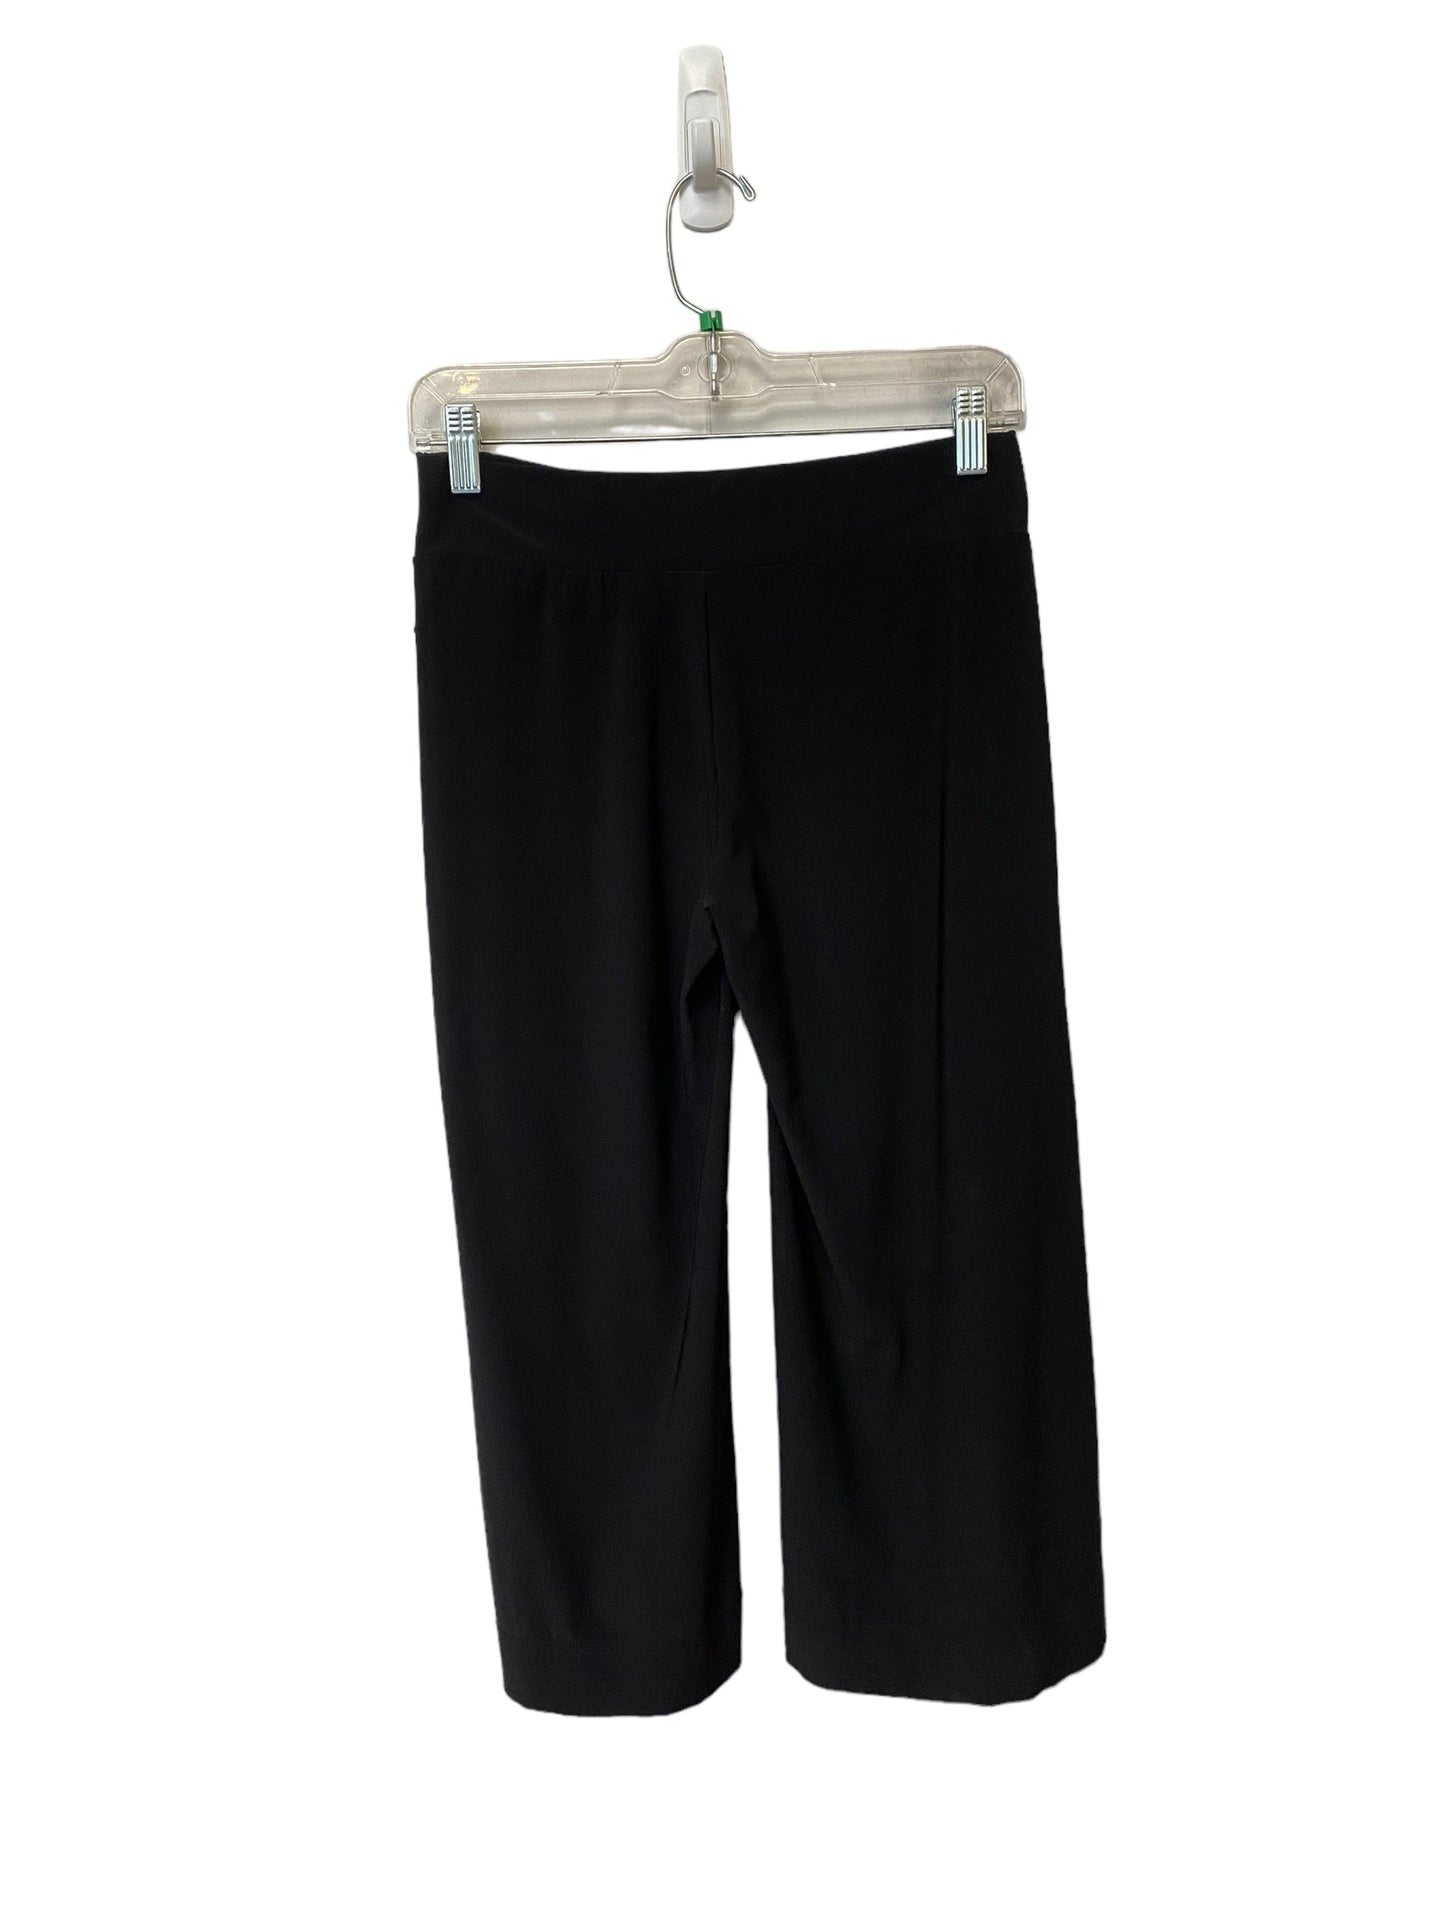 Pants Dress By White House Black Market  Size: Xxs